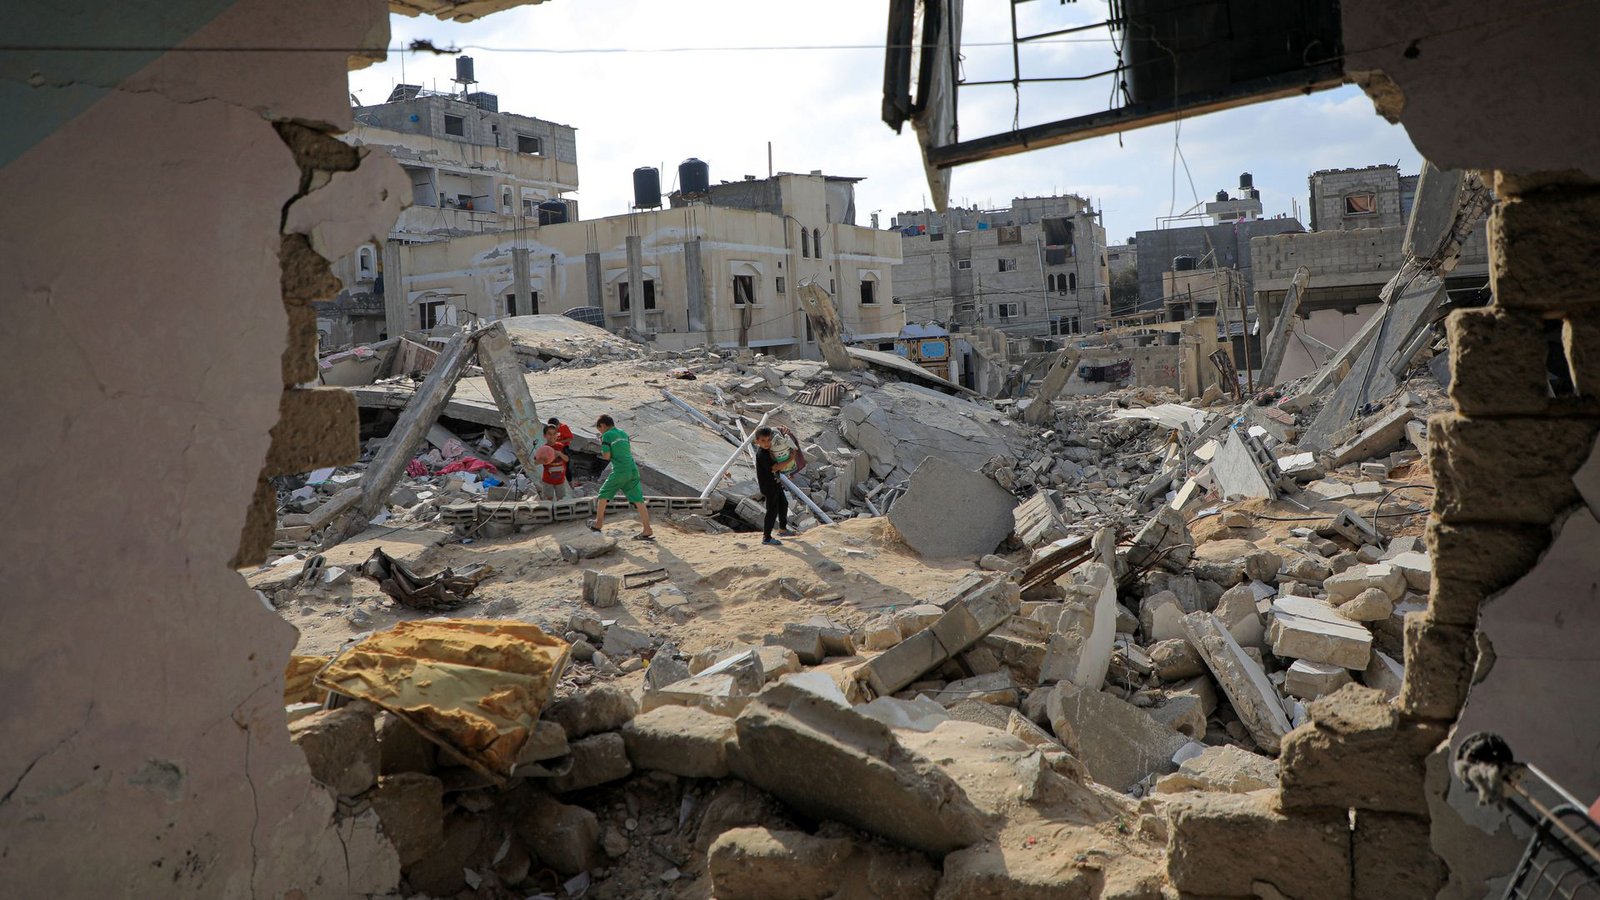 Während Kinder zwischen den Trümmern zerstörter Häuser spielen, halten die indirekten Verhandlungen über einen Geisel-Deal im Gaza-Krieg weiter an.Foto: Rizek Abdeljawad/XinHua/dpa